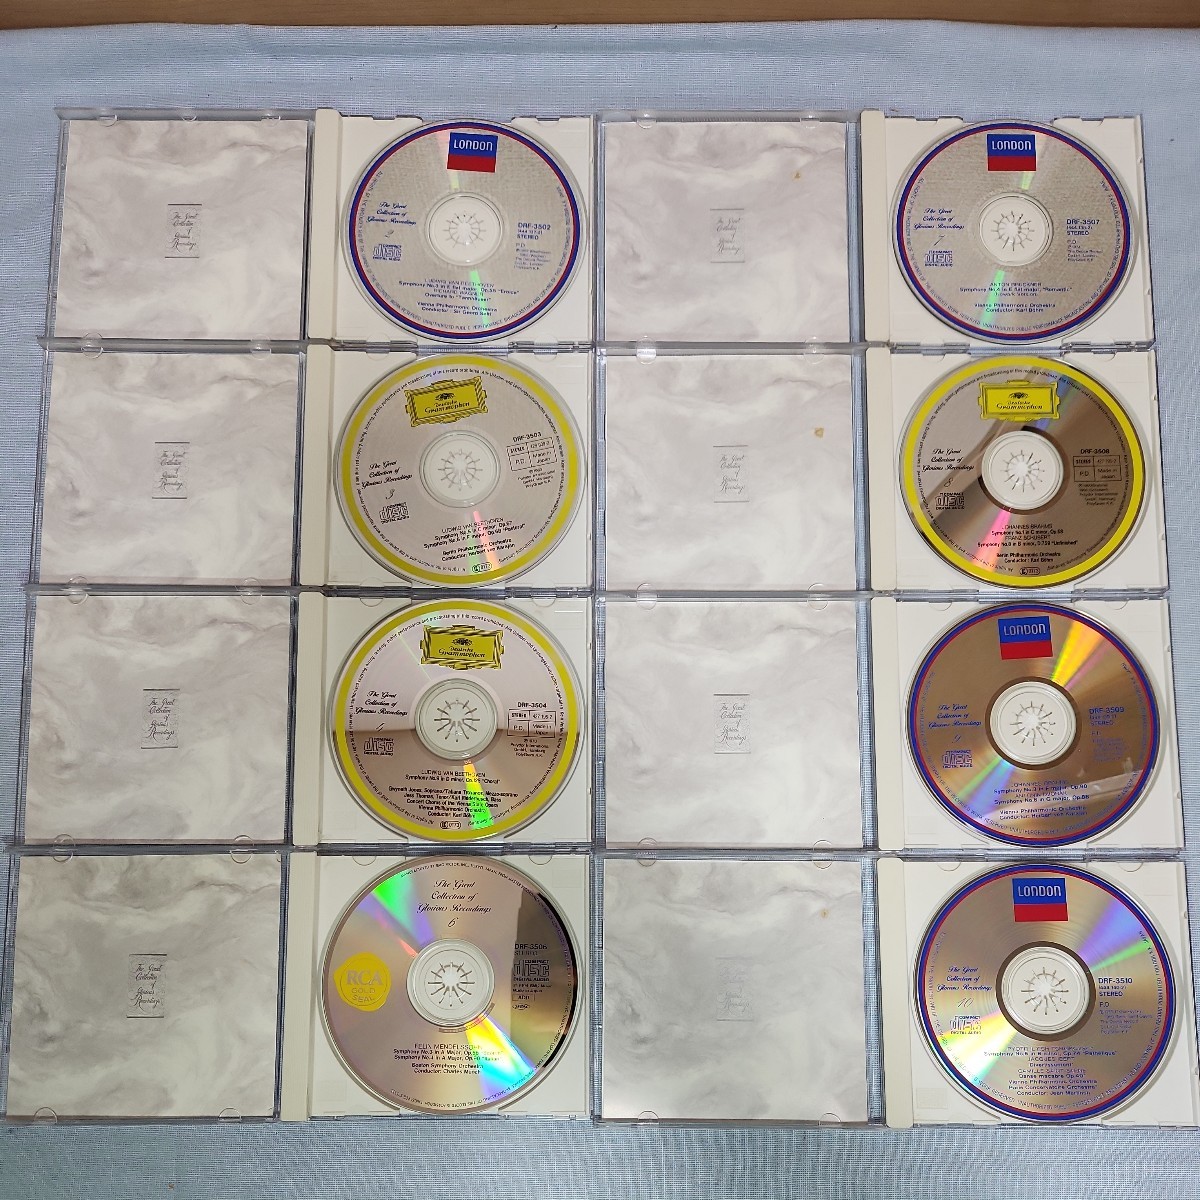 クラシック CD 26枚セット LONDON SONY CLASSICAL RCA GOLD SEAL Deutsche grammophon classic ポリグラム 栄光の名盤コレクション _画像5